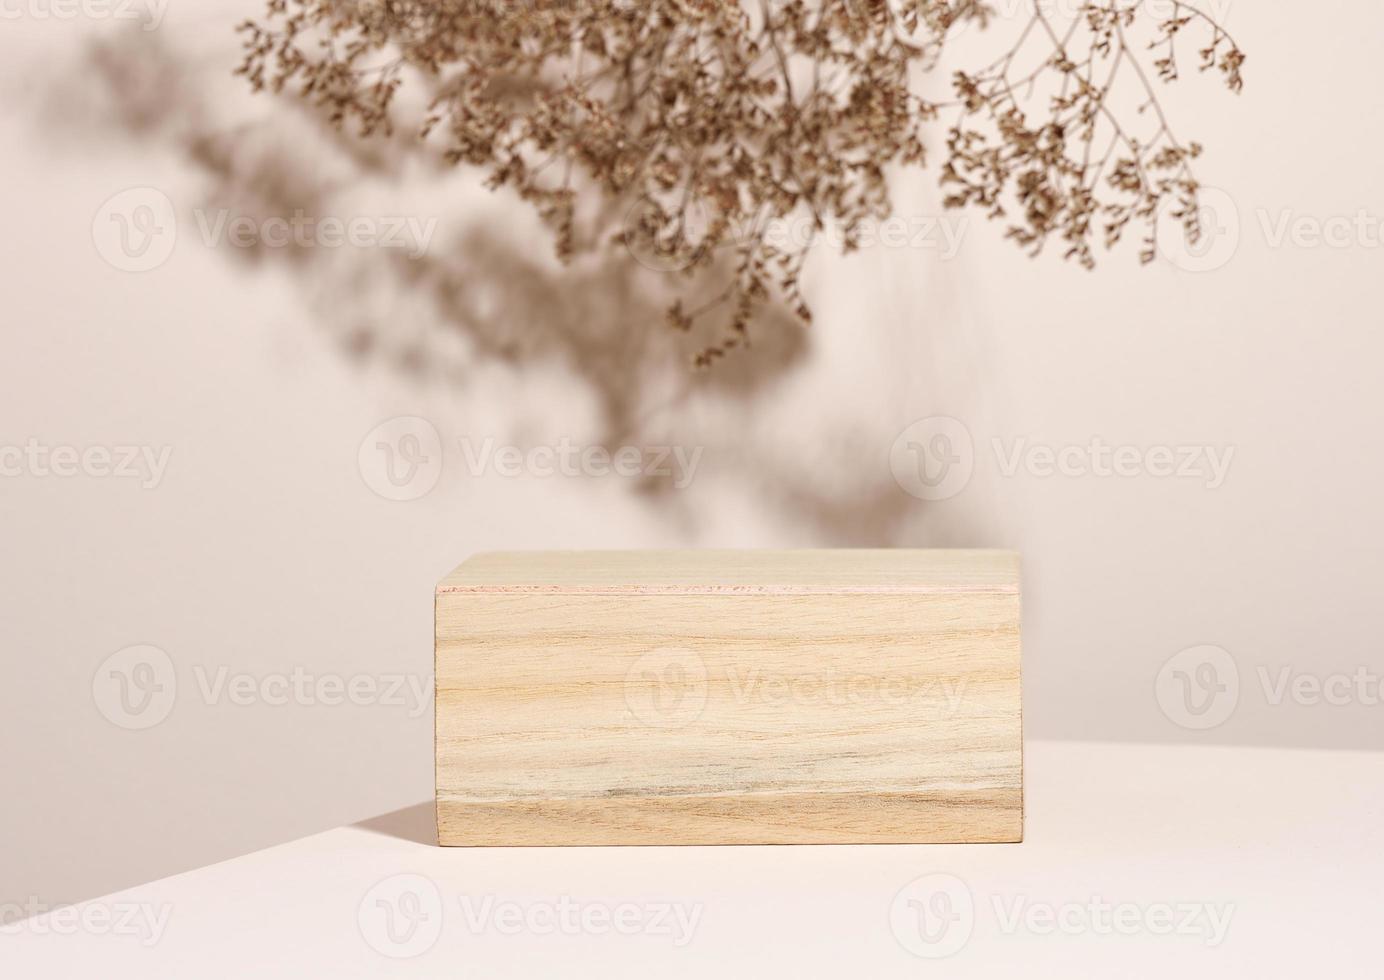 podio de madera para exhibir cosméticos y otros artículos, fondo beige con flores silvestres secas y sombra foto